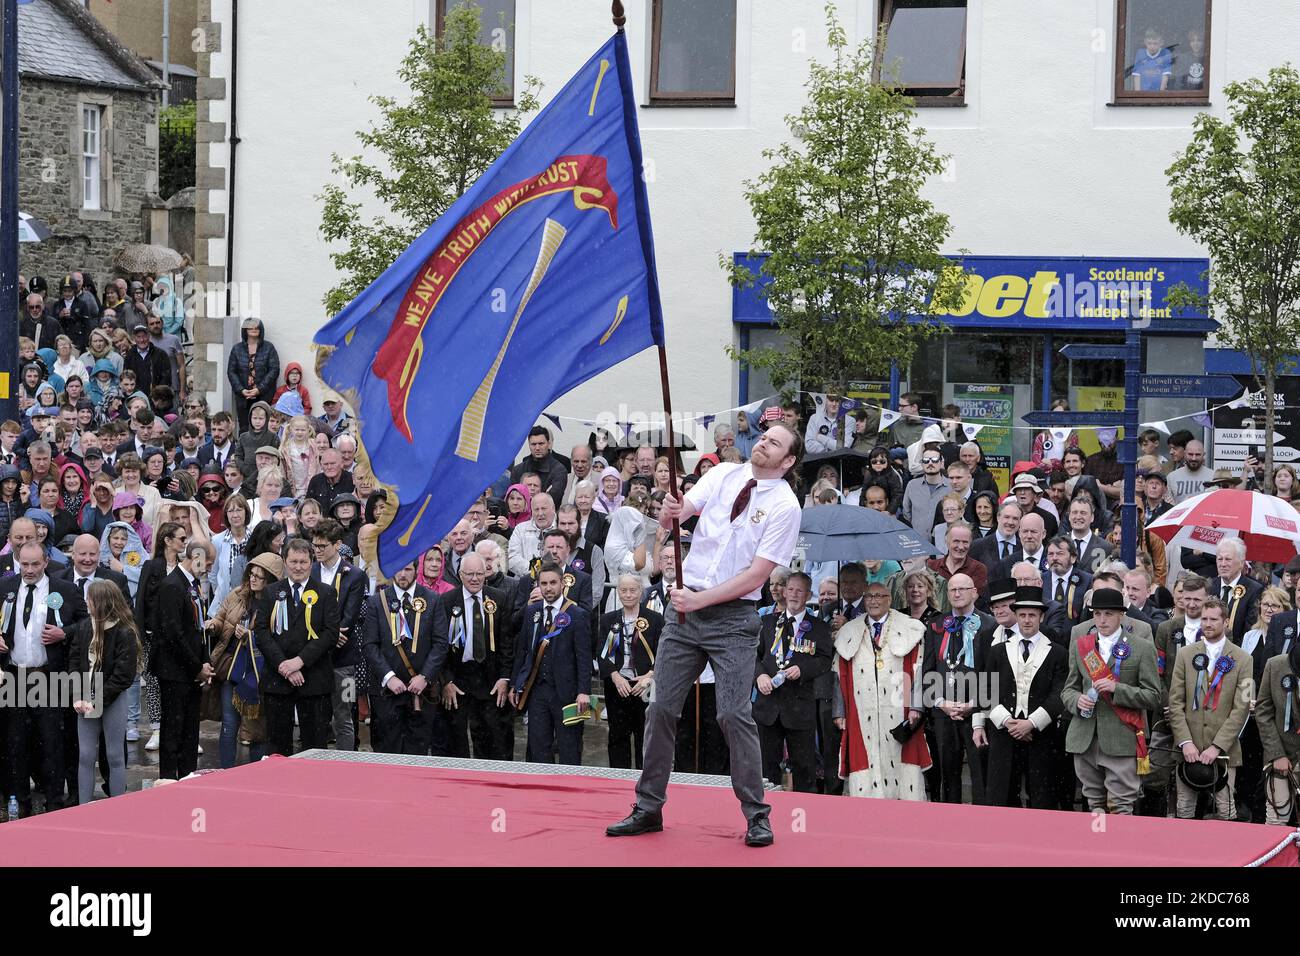 Selkirk Corporation of Weavers, M. Stuart Harkness Casting de ses associations drapeau (Standard) qui a lieu pendant la circonscription commune de la ville, l'un des plus anciens festivals de frontières, sur 17 juin 2022 à Selkirk, en Écosse. L'événement, qui date de la bataille de Flodden en 1513, se souvient de l'histoire de Flodden, quand Selkirk envoya 80 hommes au combat avec le roi écossais. Un homme est retourné, portant un drapeau anglais taché de sang. Le point culminant de la journée implique le porteur standard et les métiers d’art et associations les porteurs standard de la ville qui jettent leurs couleurs sur l’ancien marché de Selkirk. (Photo de Rob Gray/Nur Banque D'Images